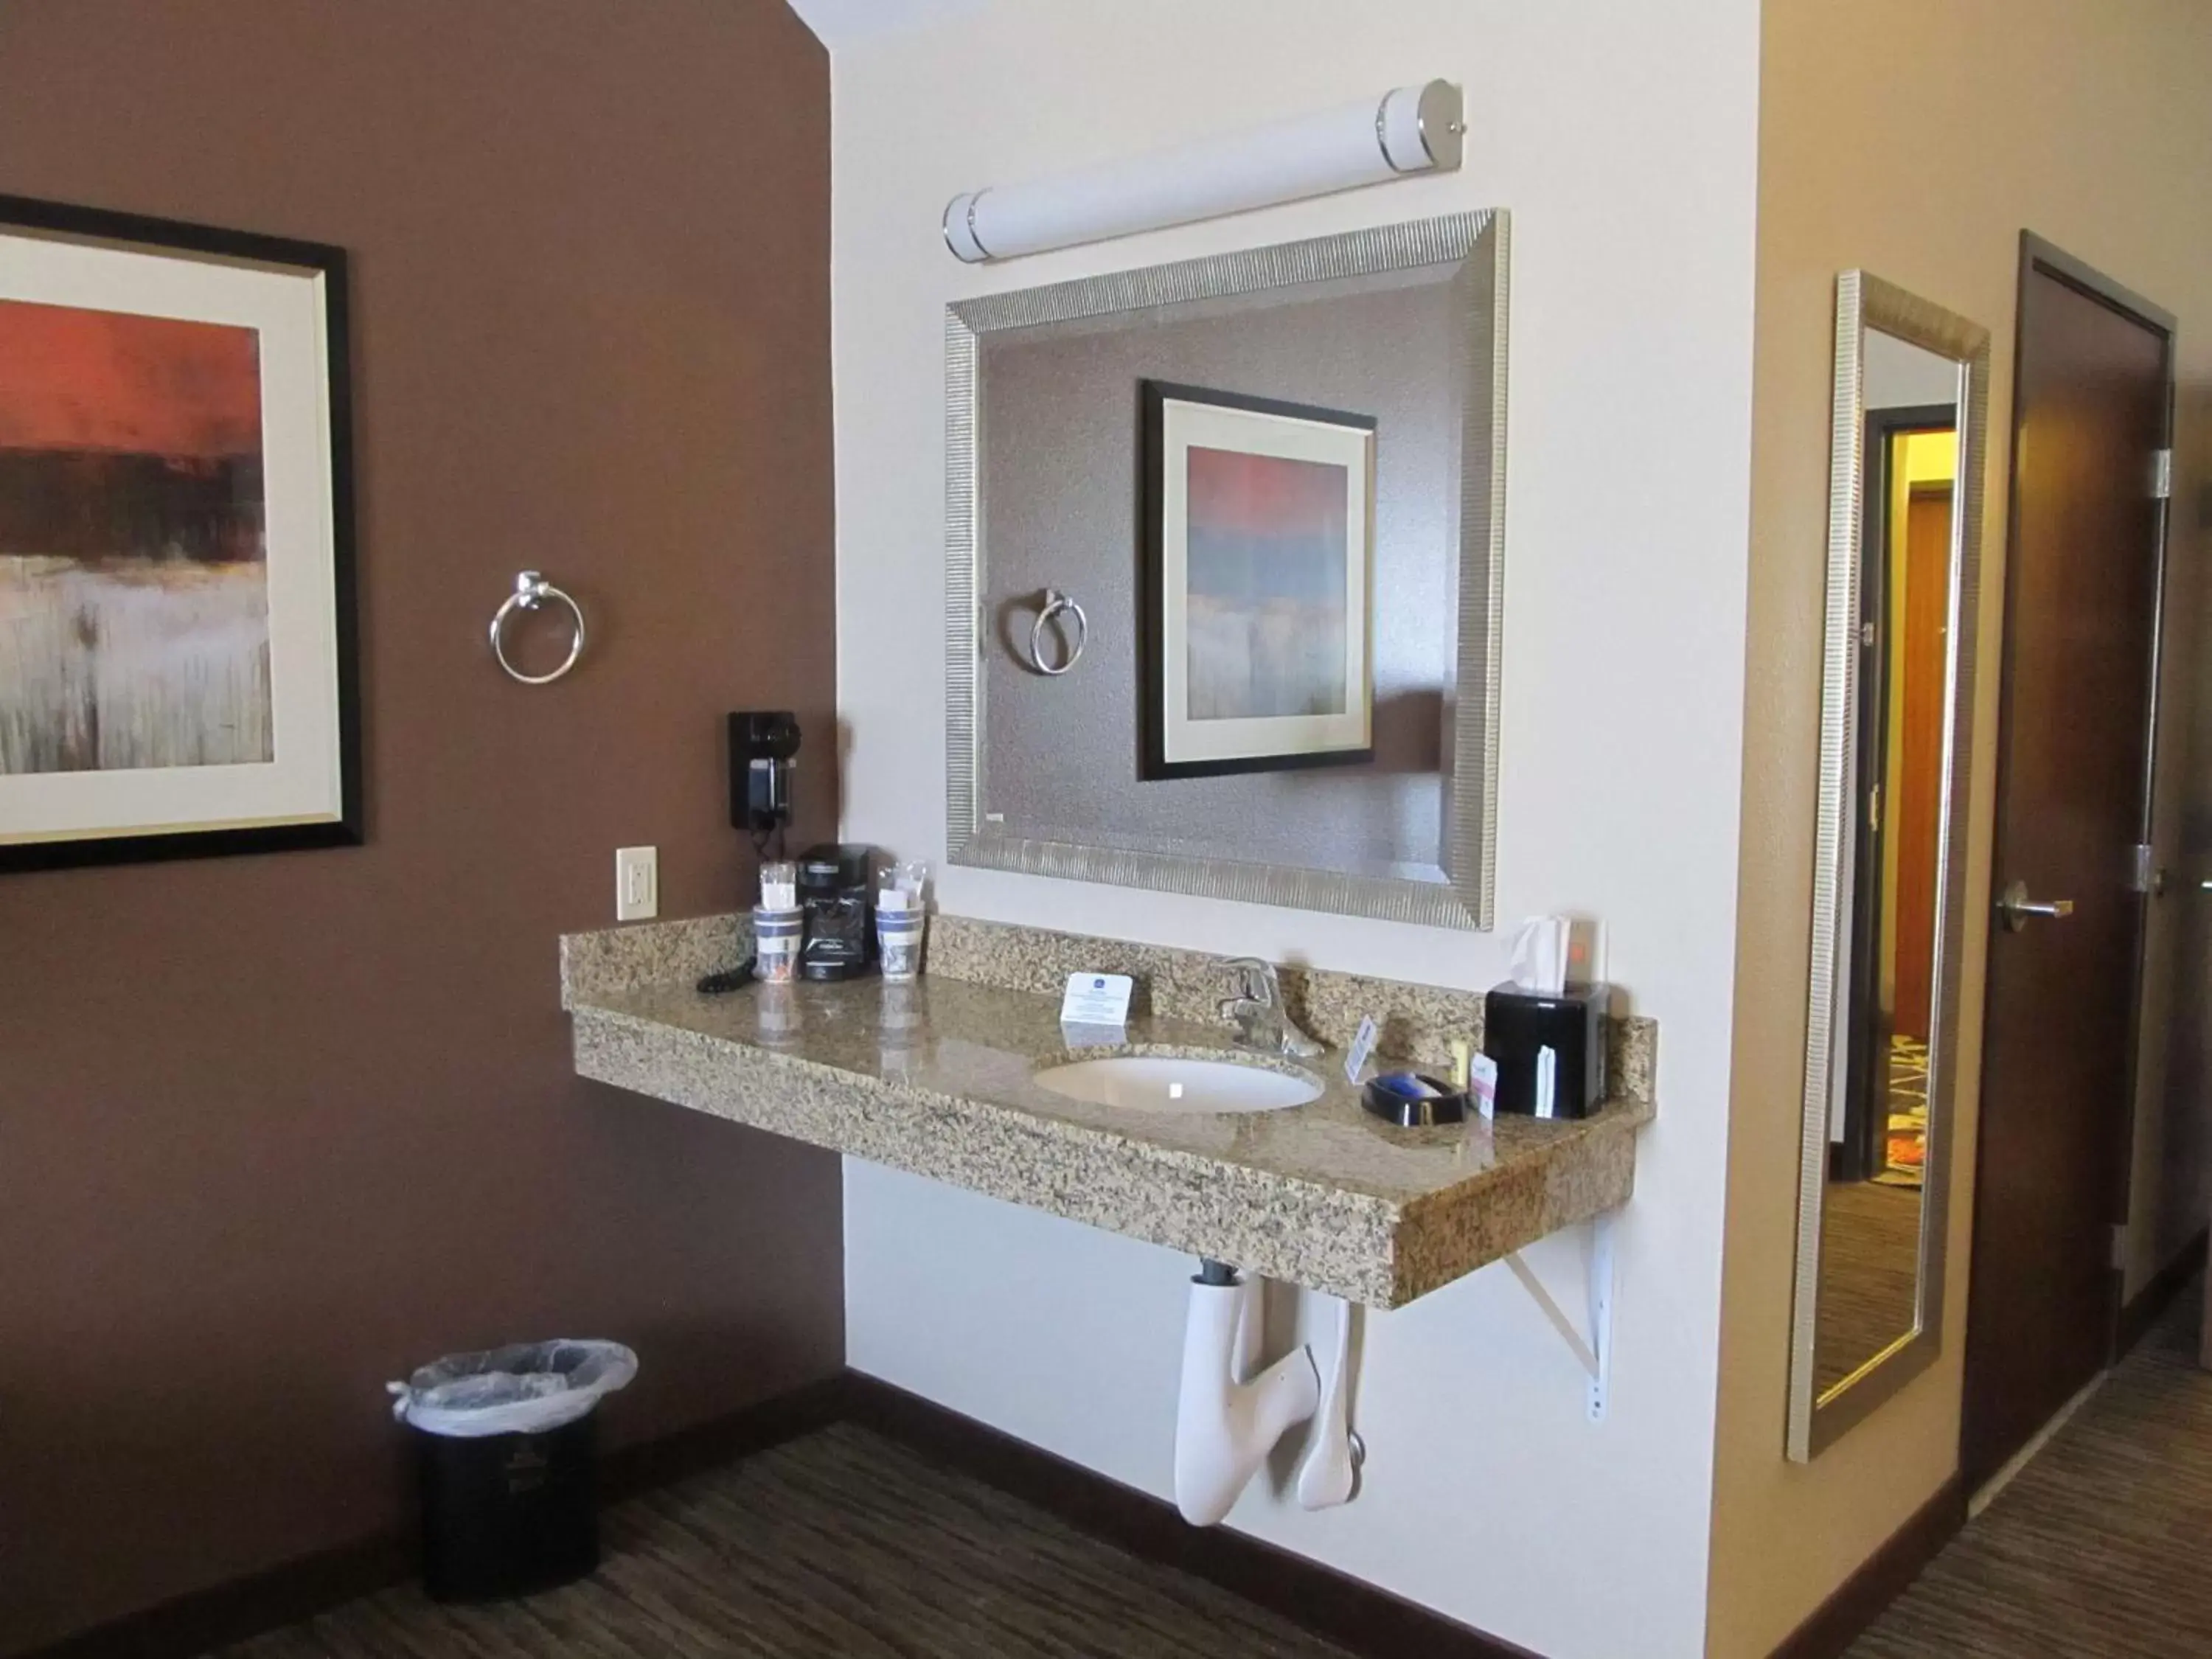 Photo of the whole room, Bathroom in Best Western Plus Landmark Hotel